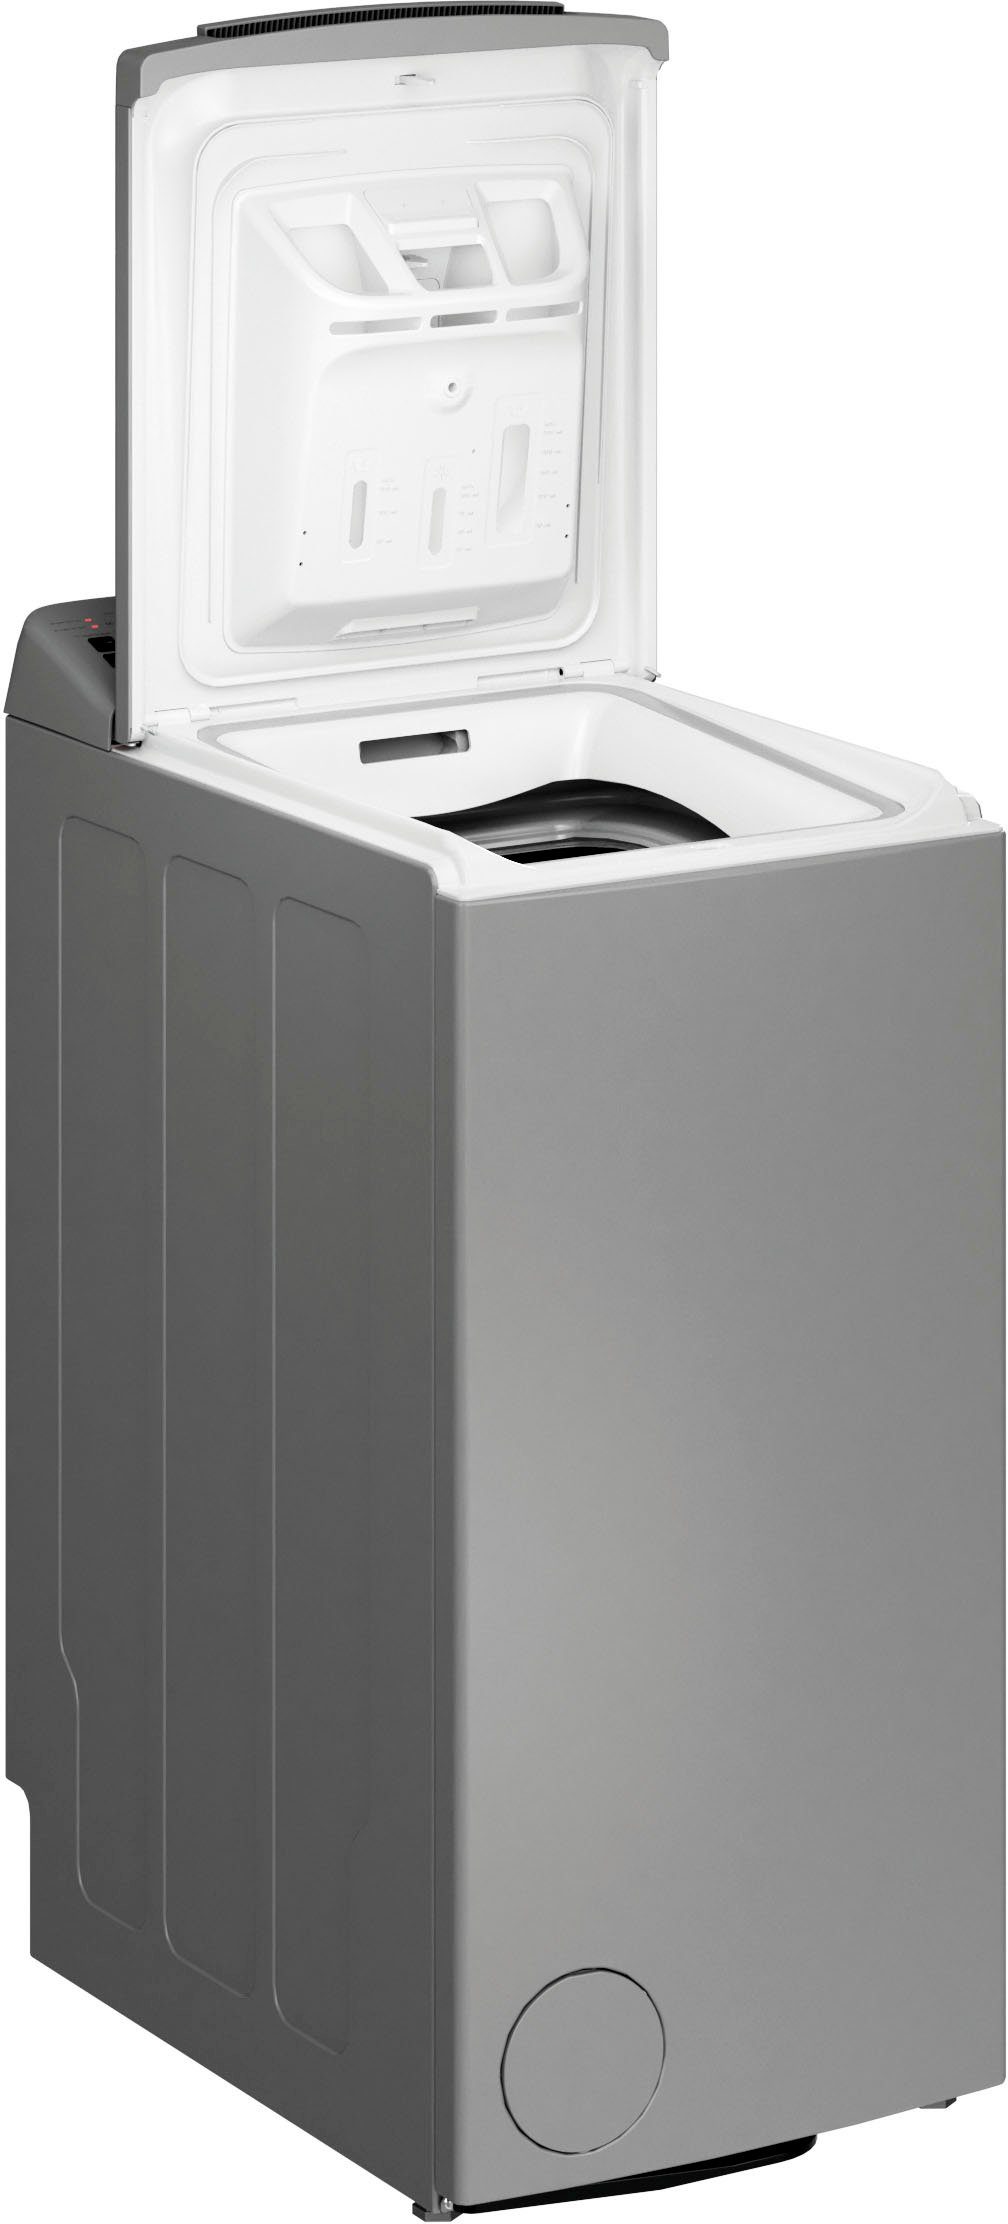 BAUKNECHT Waschmaschine Toplader WMT Silver 7 BD N, 7 kg, 1200 U/min online  kaufen | OTTO